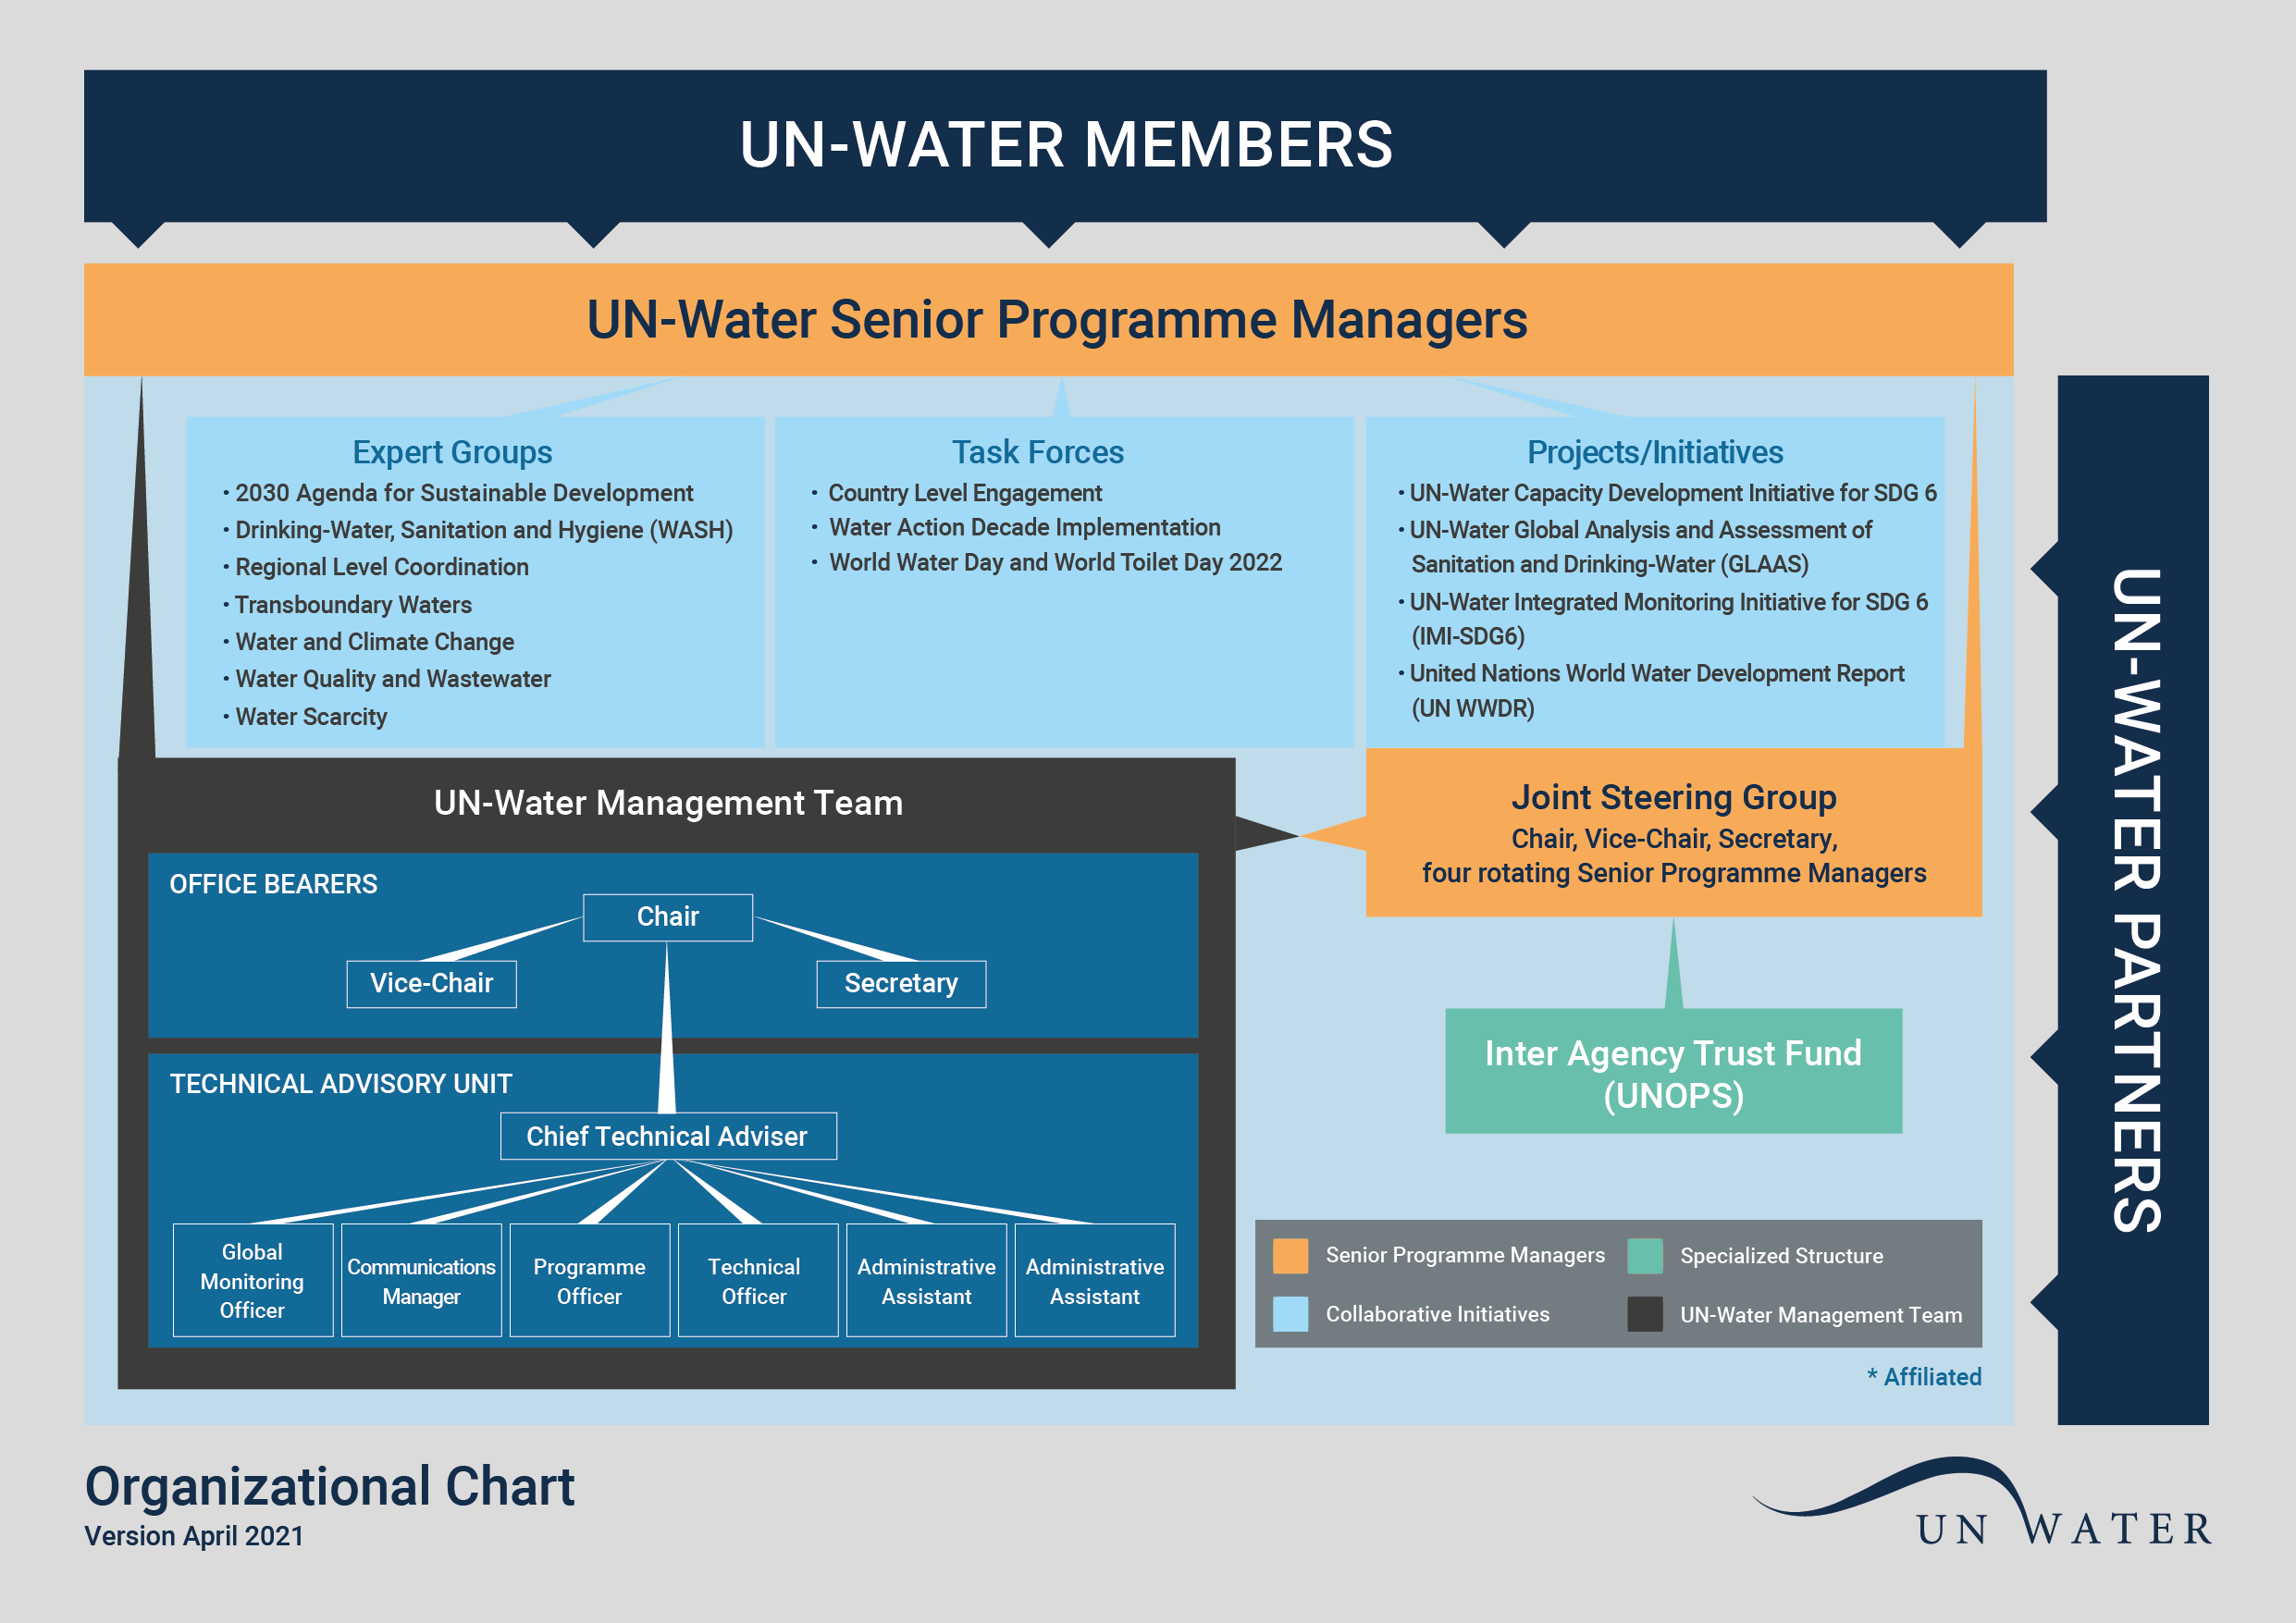 UN-Water's organizational chart